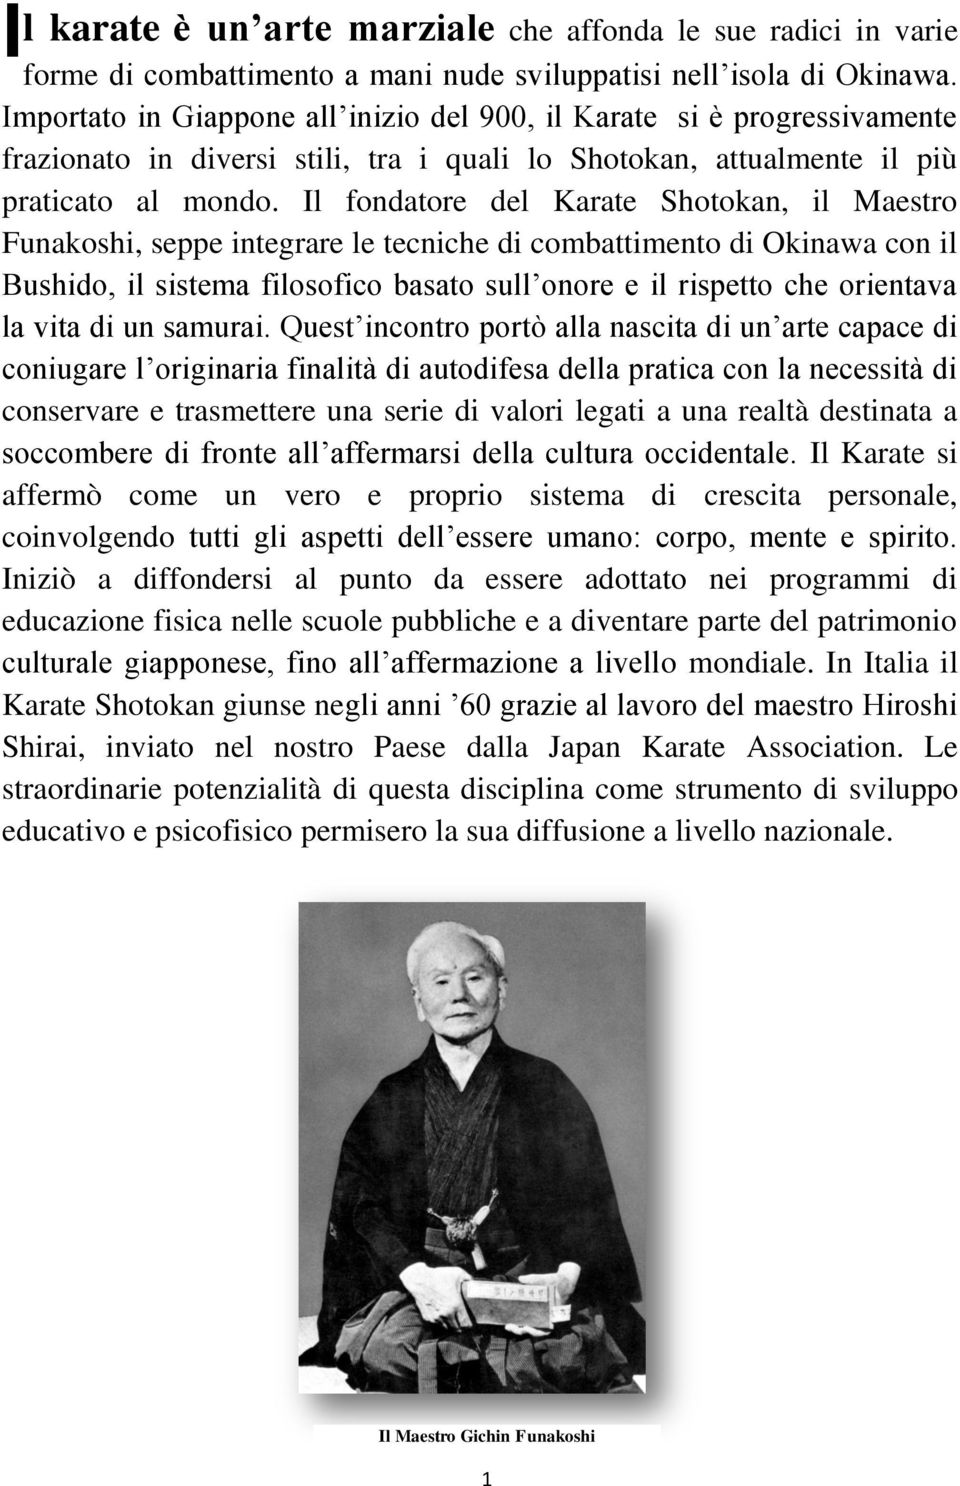 Il fondatore del Karate Shotokan, il Maestro Funakoshi, seppe integrare le tecniche di combattimento di Okinawa con il Bushido, il sistema filosofico basato sull onore e il rispetto che orientava la